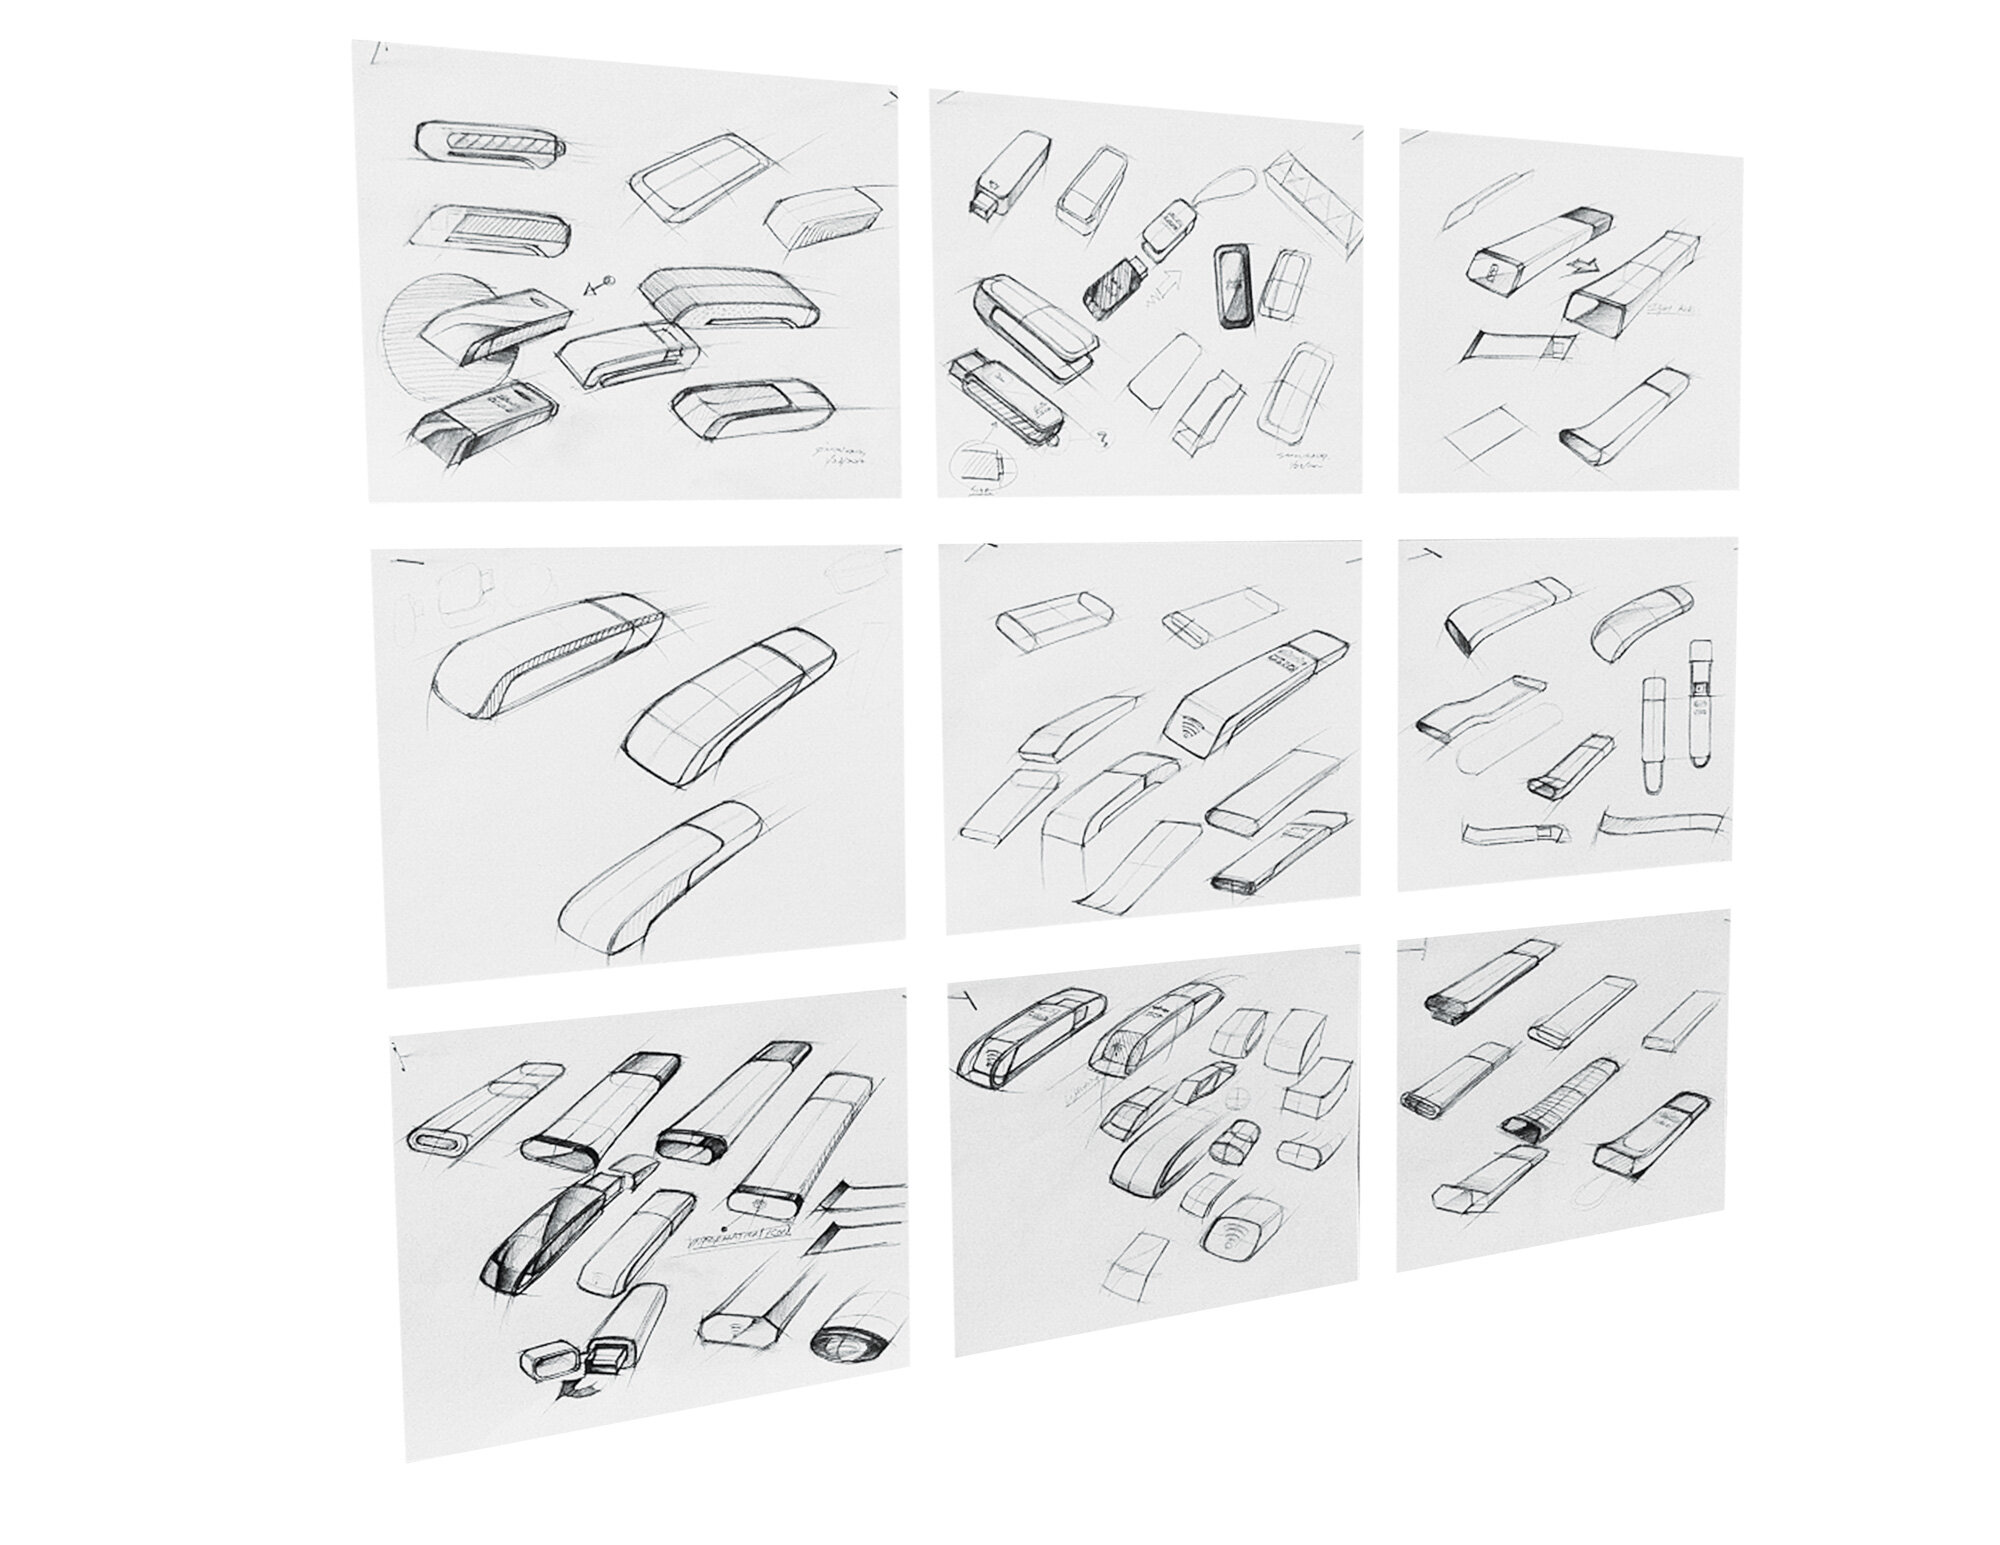 Poerter-USB-sketches.jpg